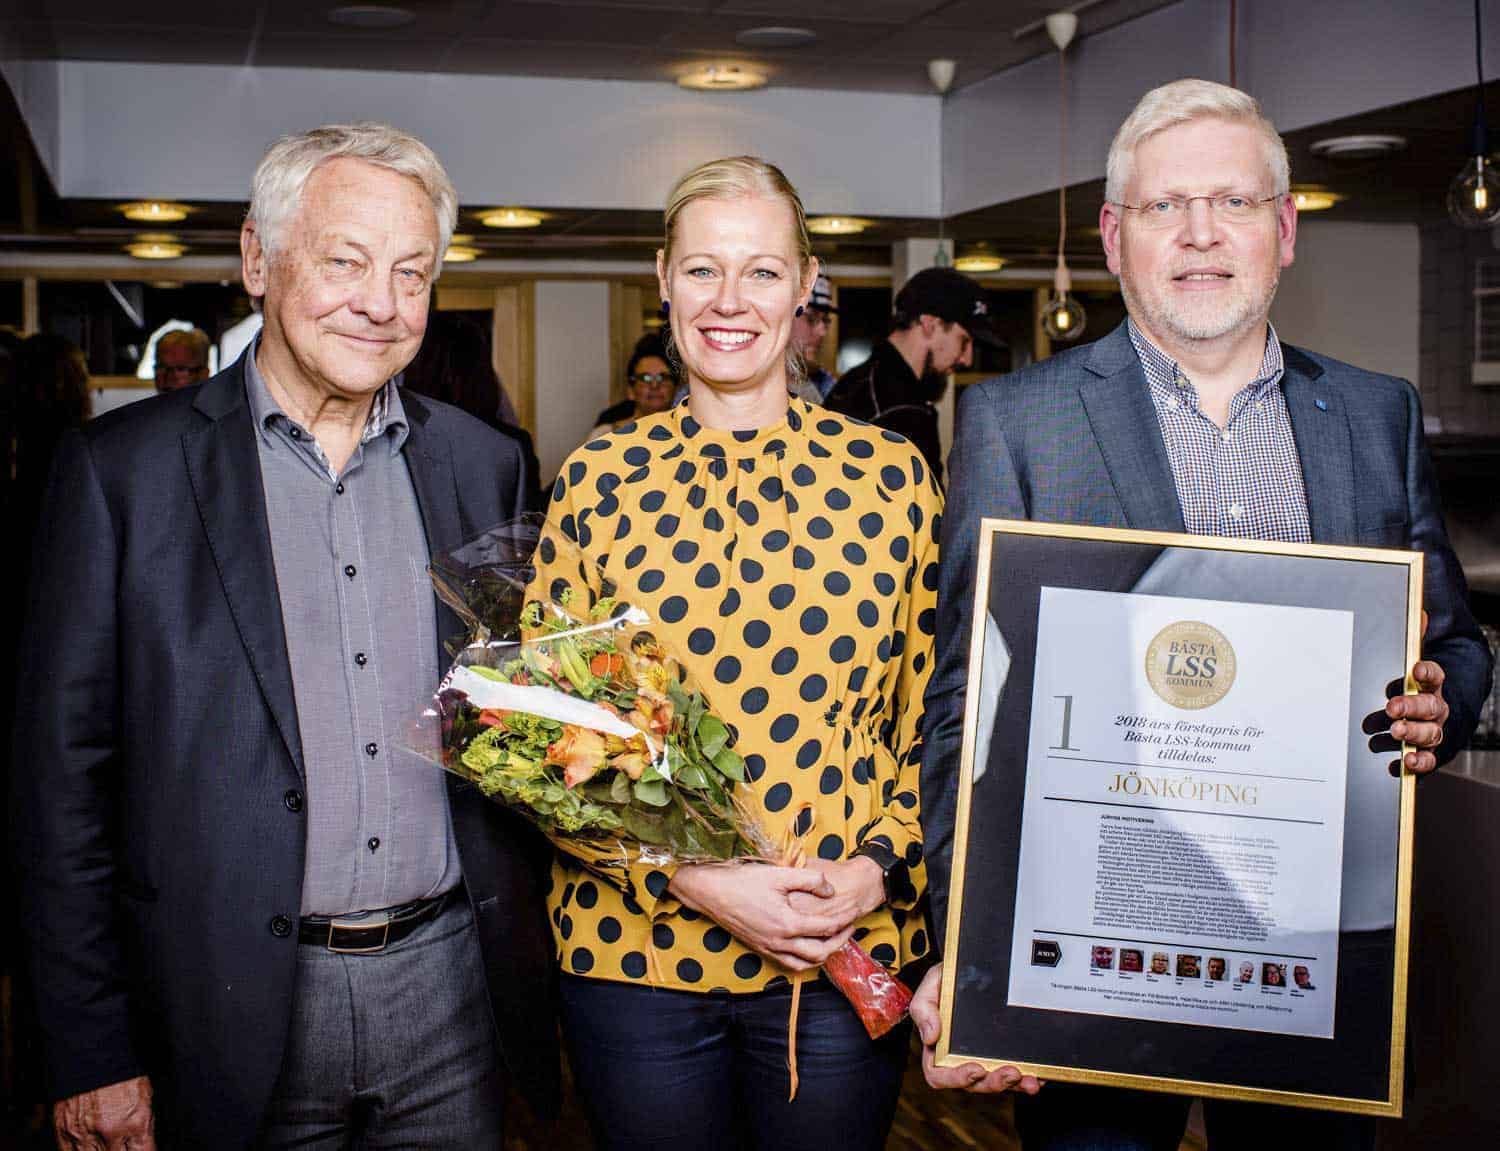 Jönköpings kommun tog hem segern i Bästa LSS-kommun 2018. Det var Bengt Westerberg som delade ut priset till Anna Bunninger och Ola Nilsson. Foto: Linnea Bengtsson.